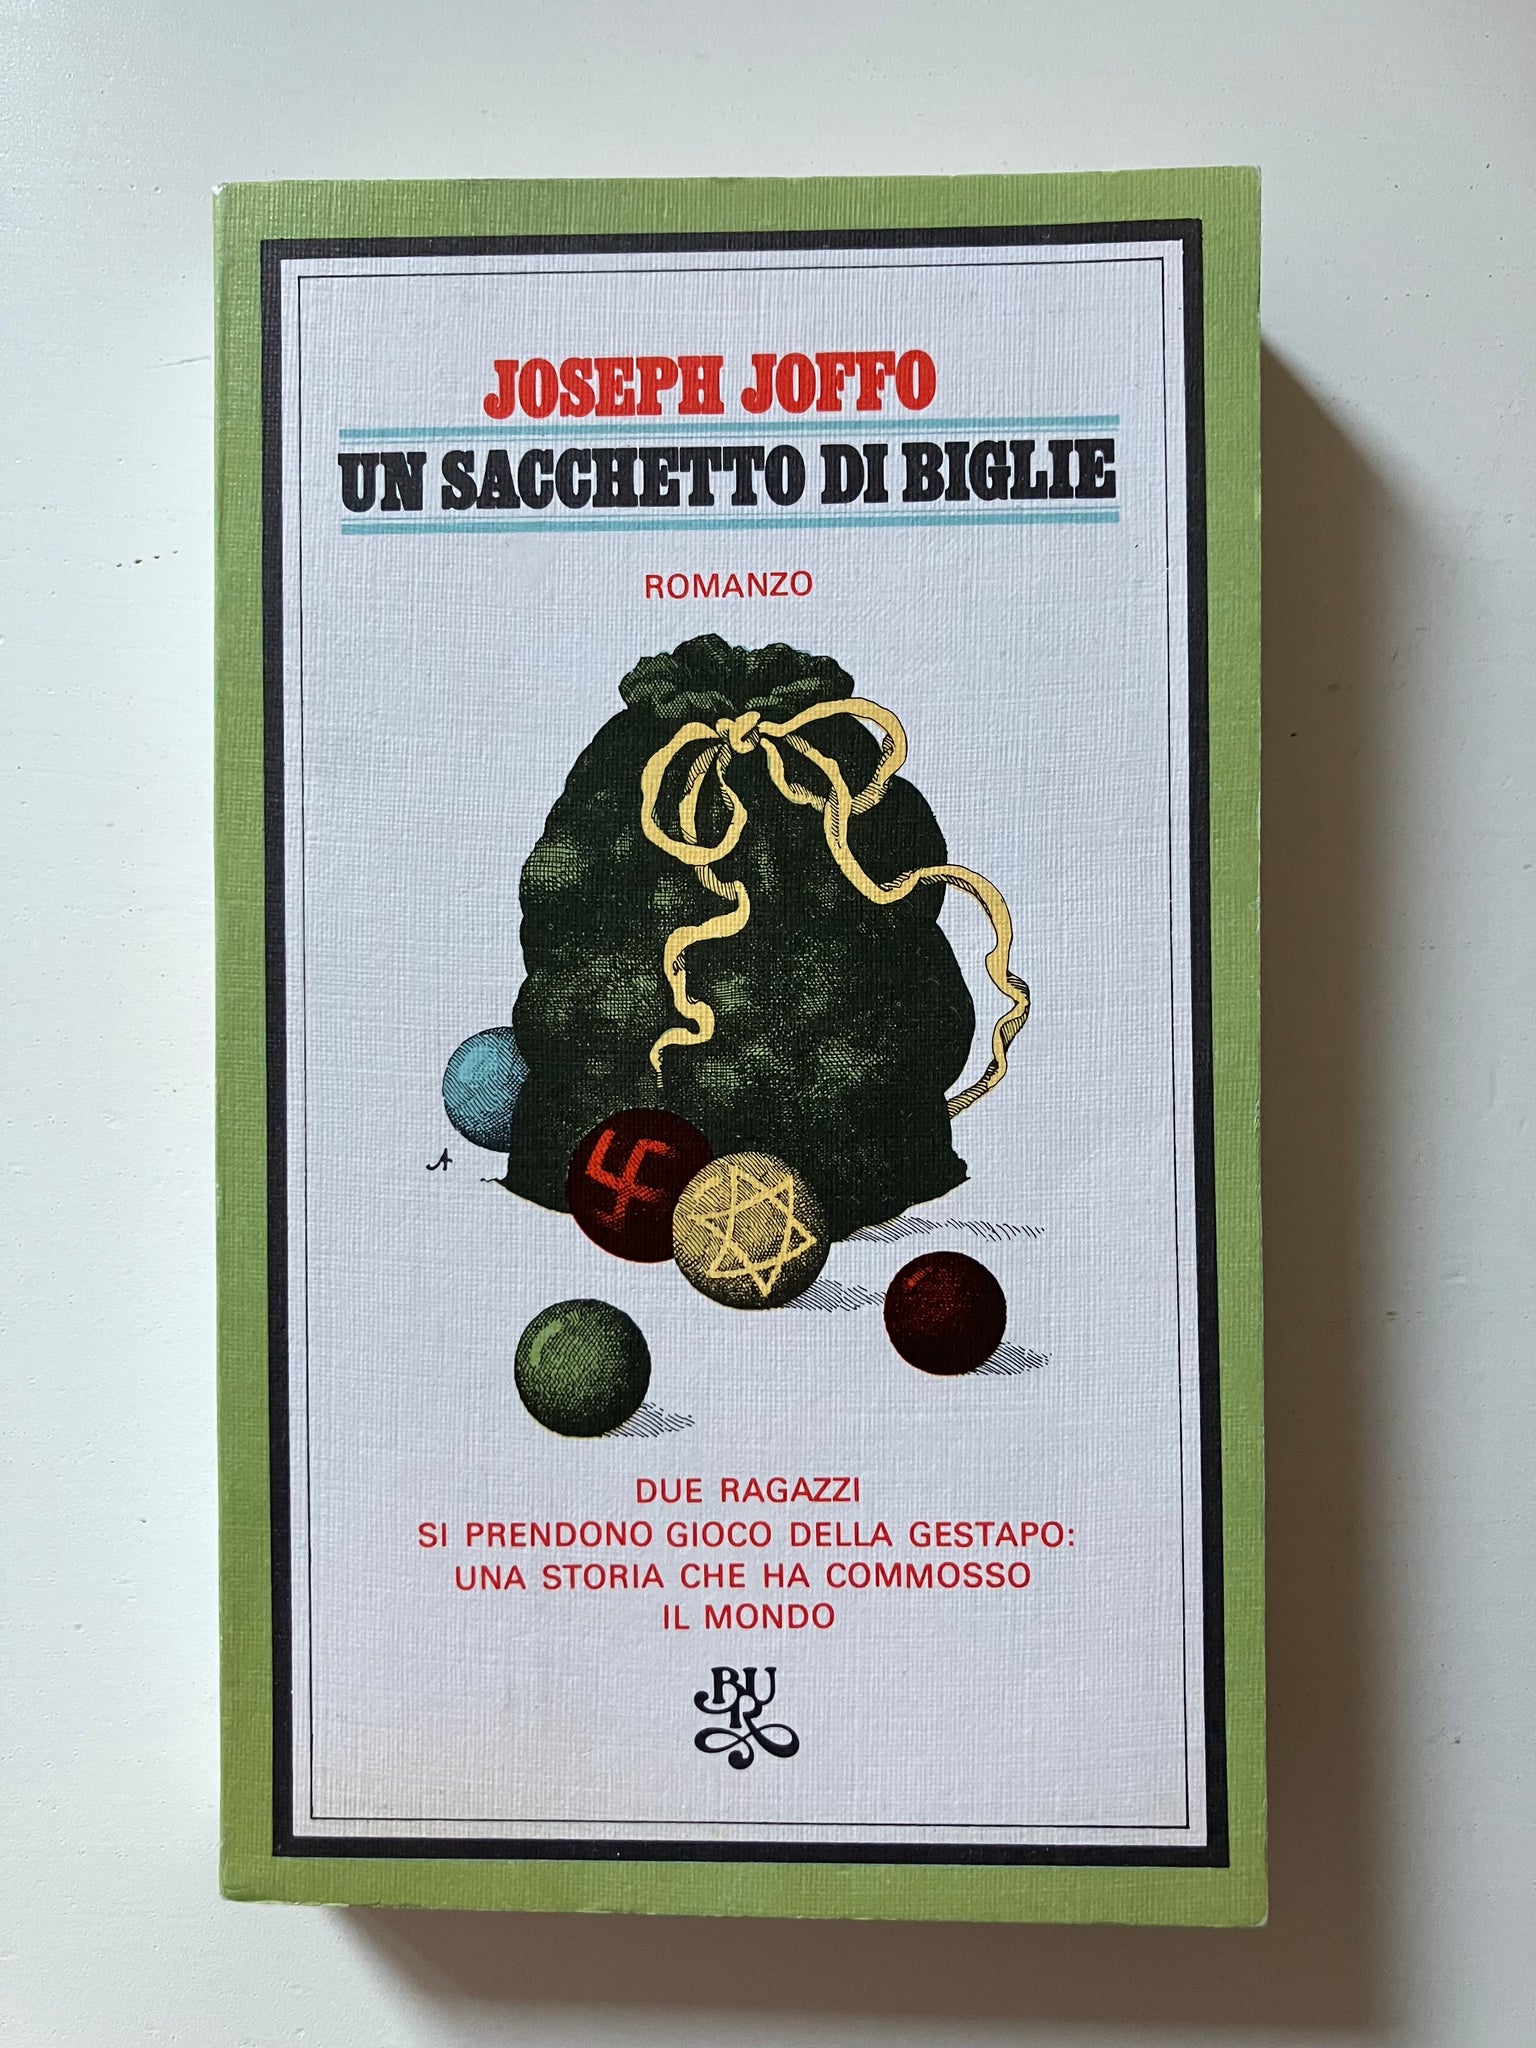 Joseph Joffo - Un sacchetto di biglie